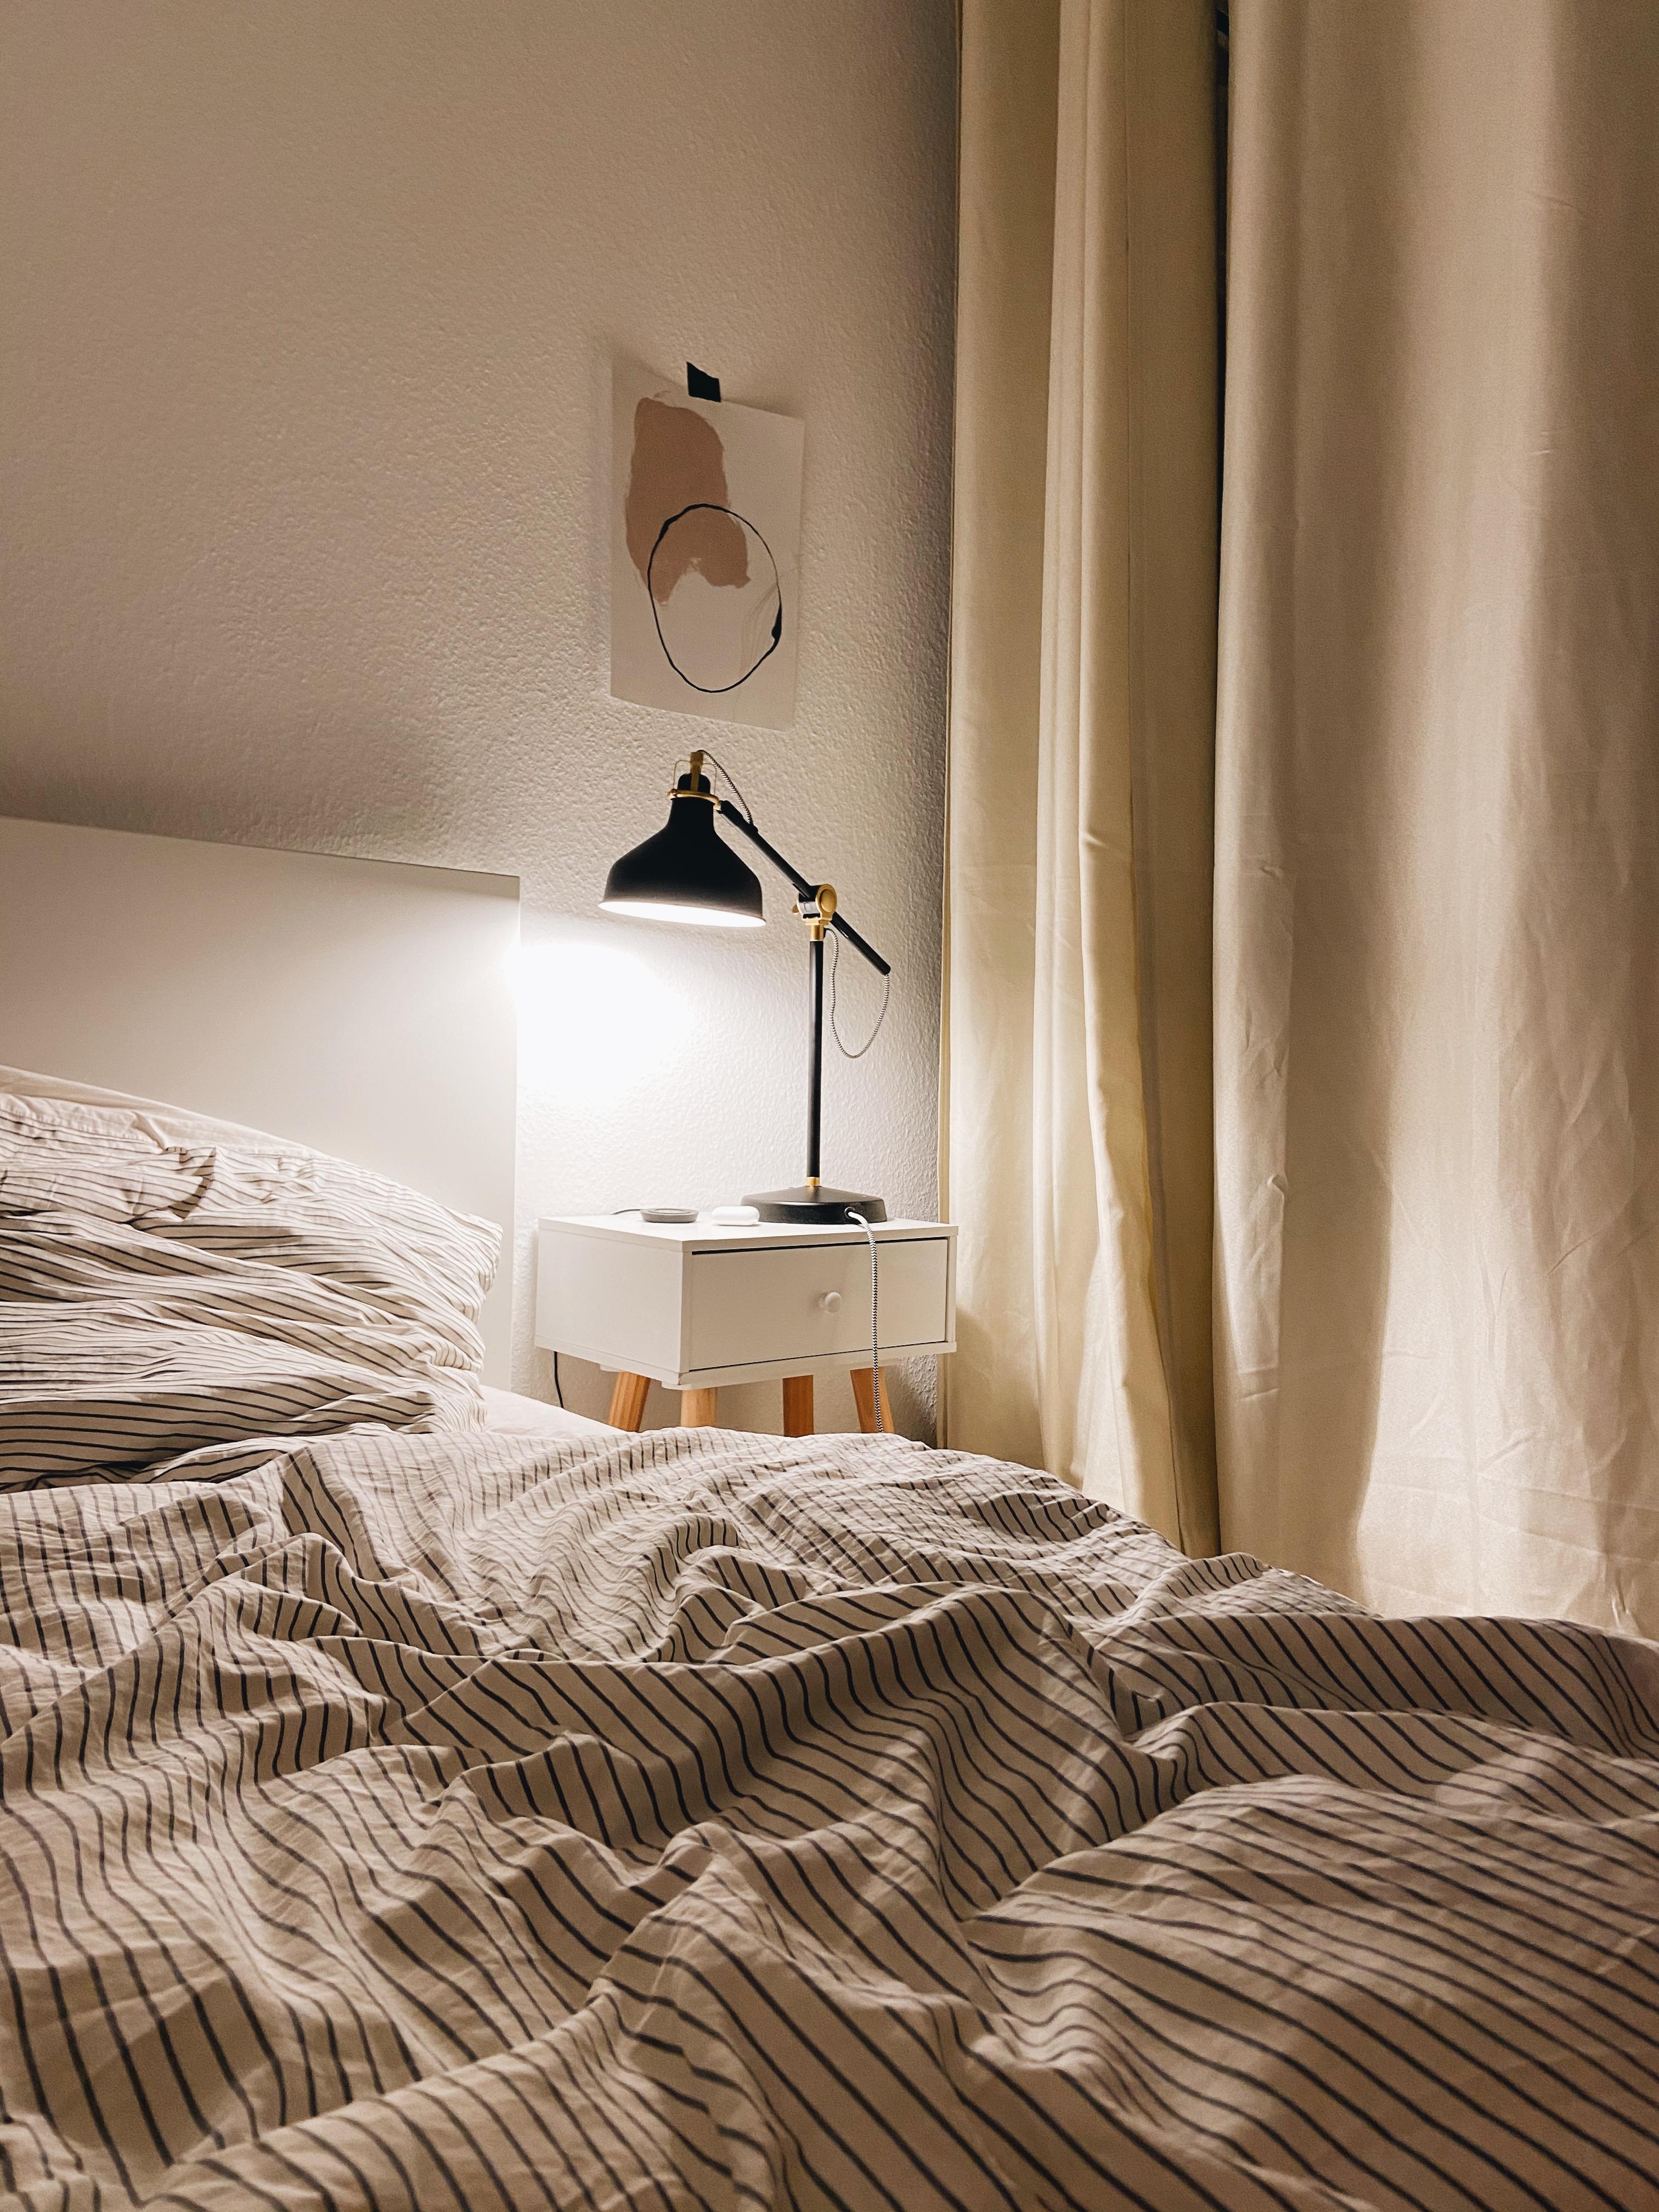 Grüße aus dem #schlafzimmer 🌜 #bedroom #beige #hygge #cozy 